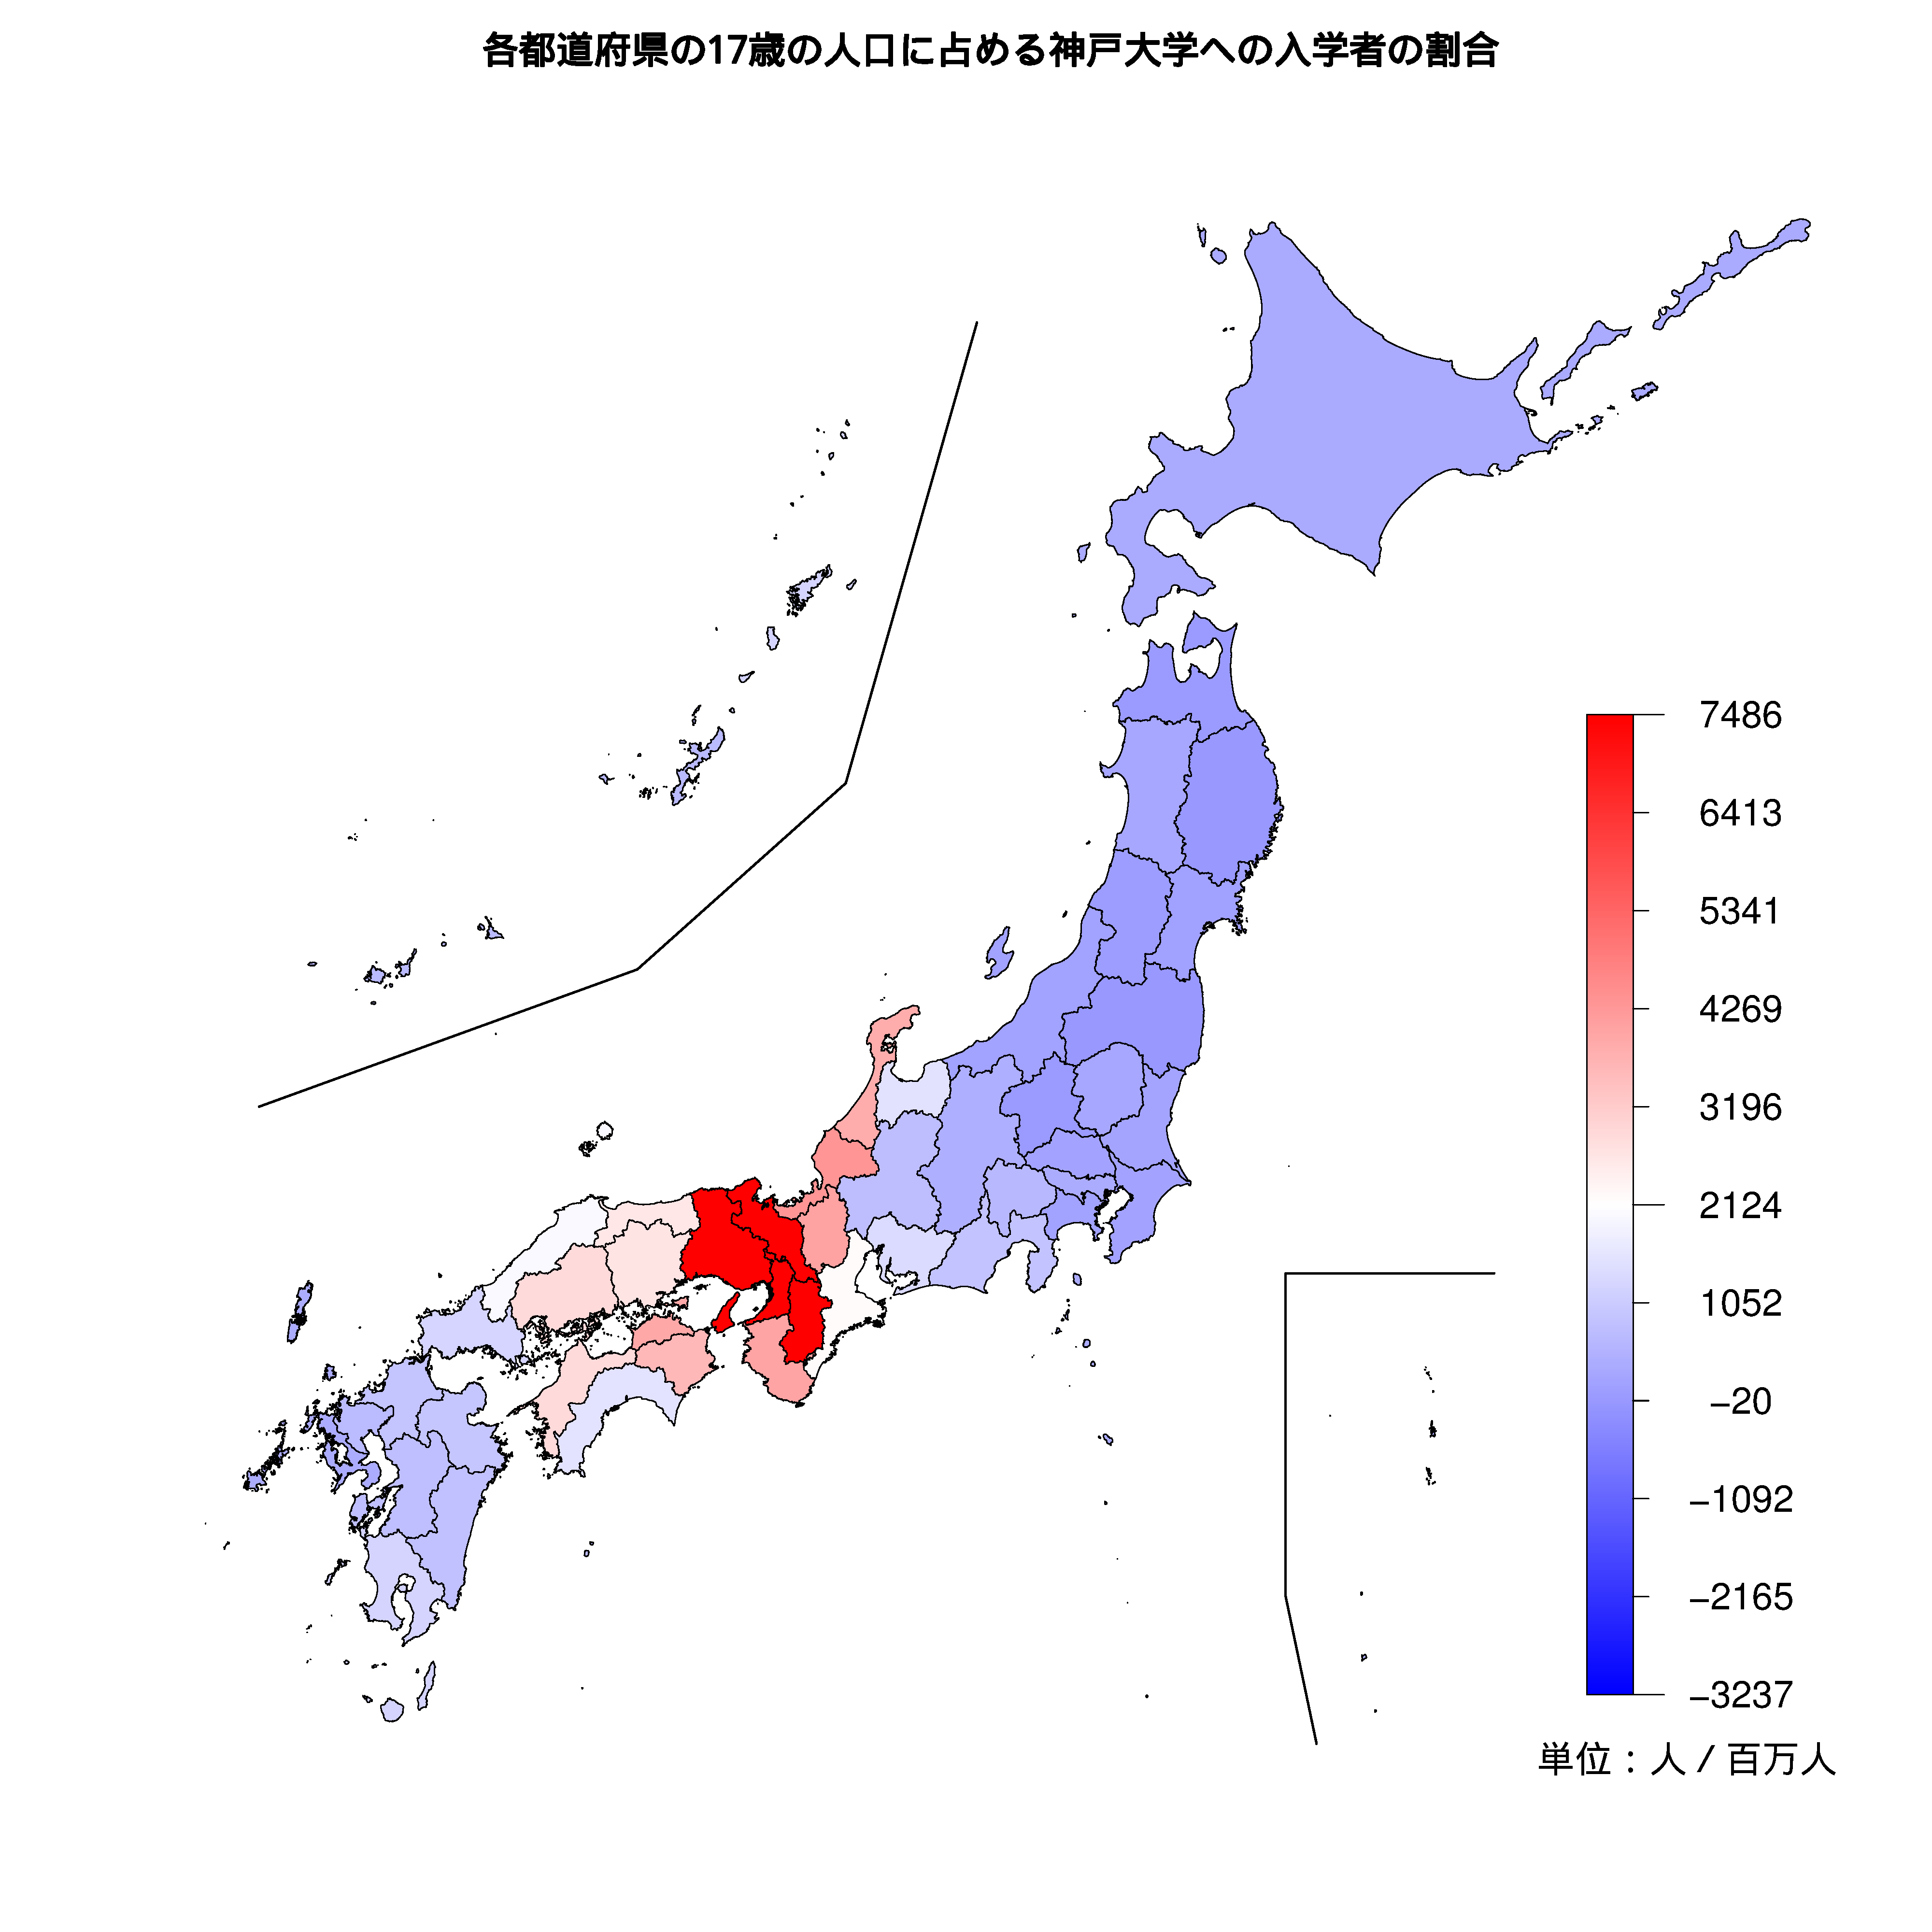 神戸大学への入学者が多い都道府県の色分け地図